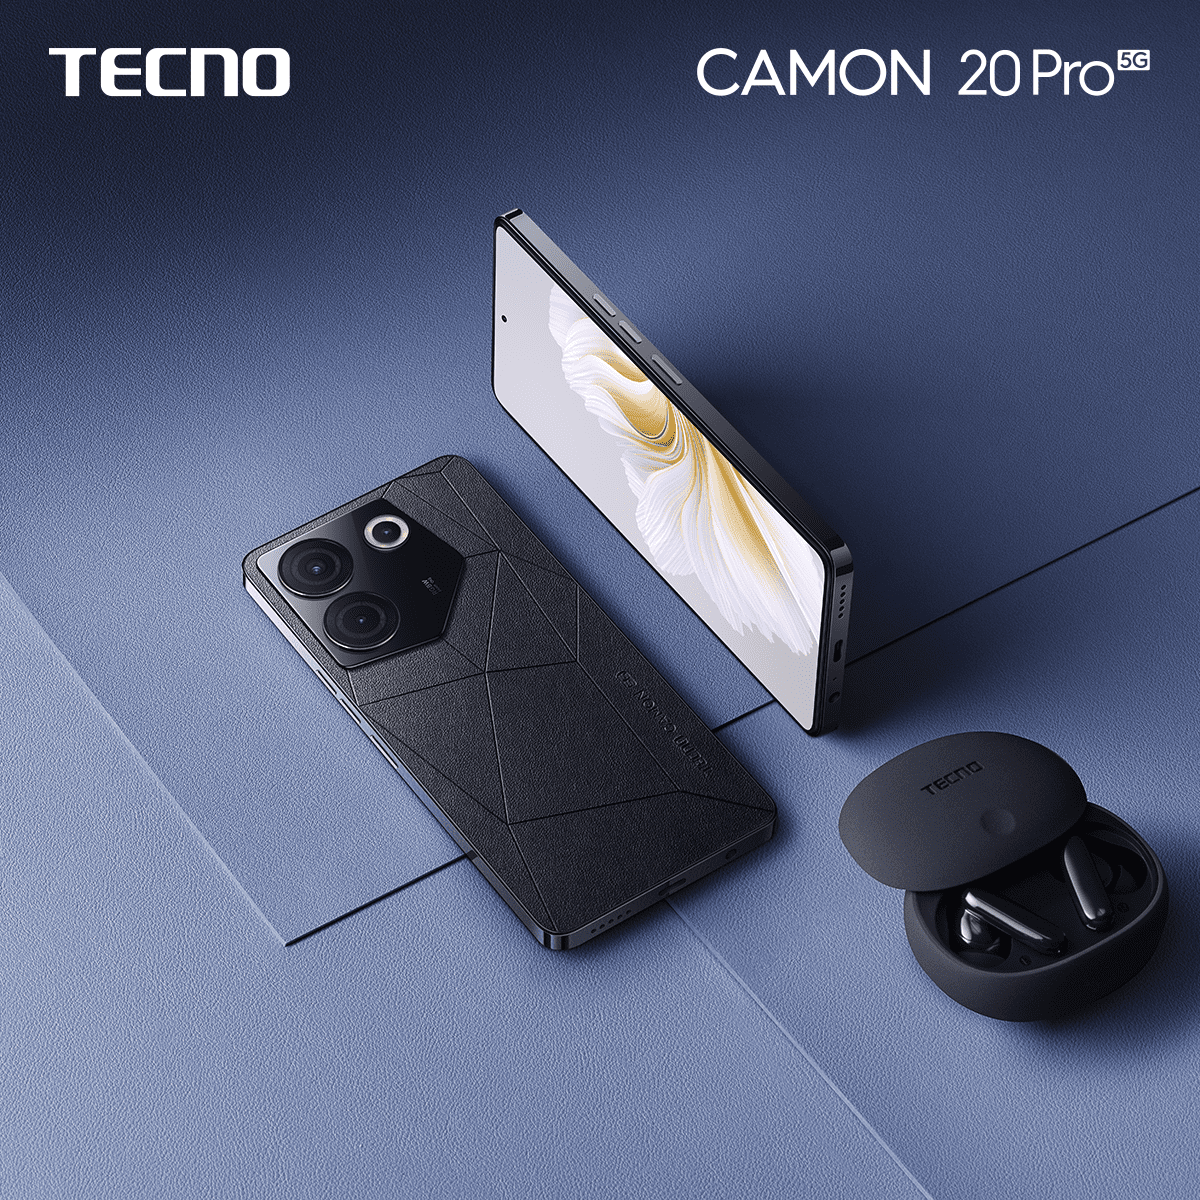 TECNO CAMON 20: The ultimate device for non-stop fun and creativity! 